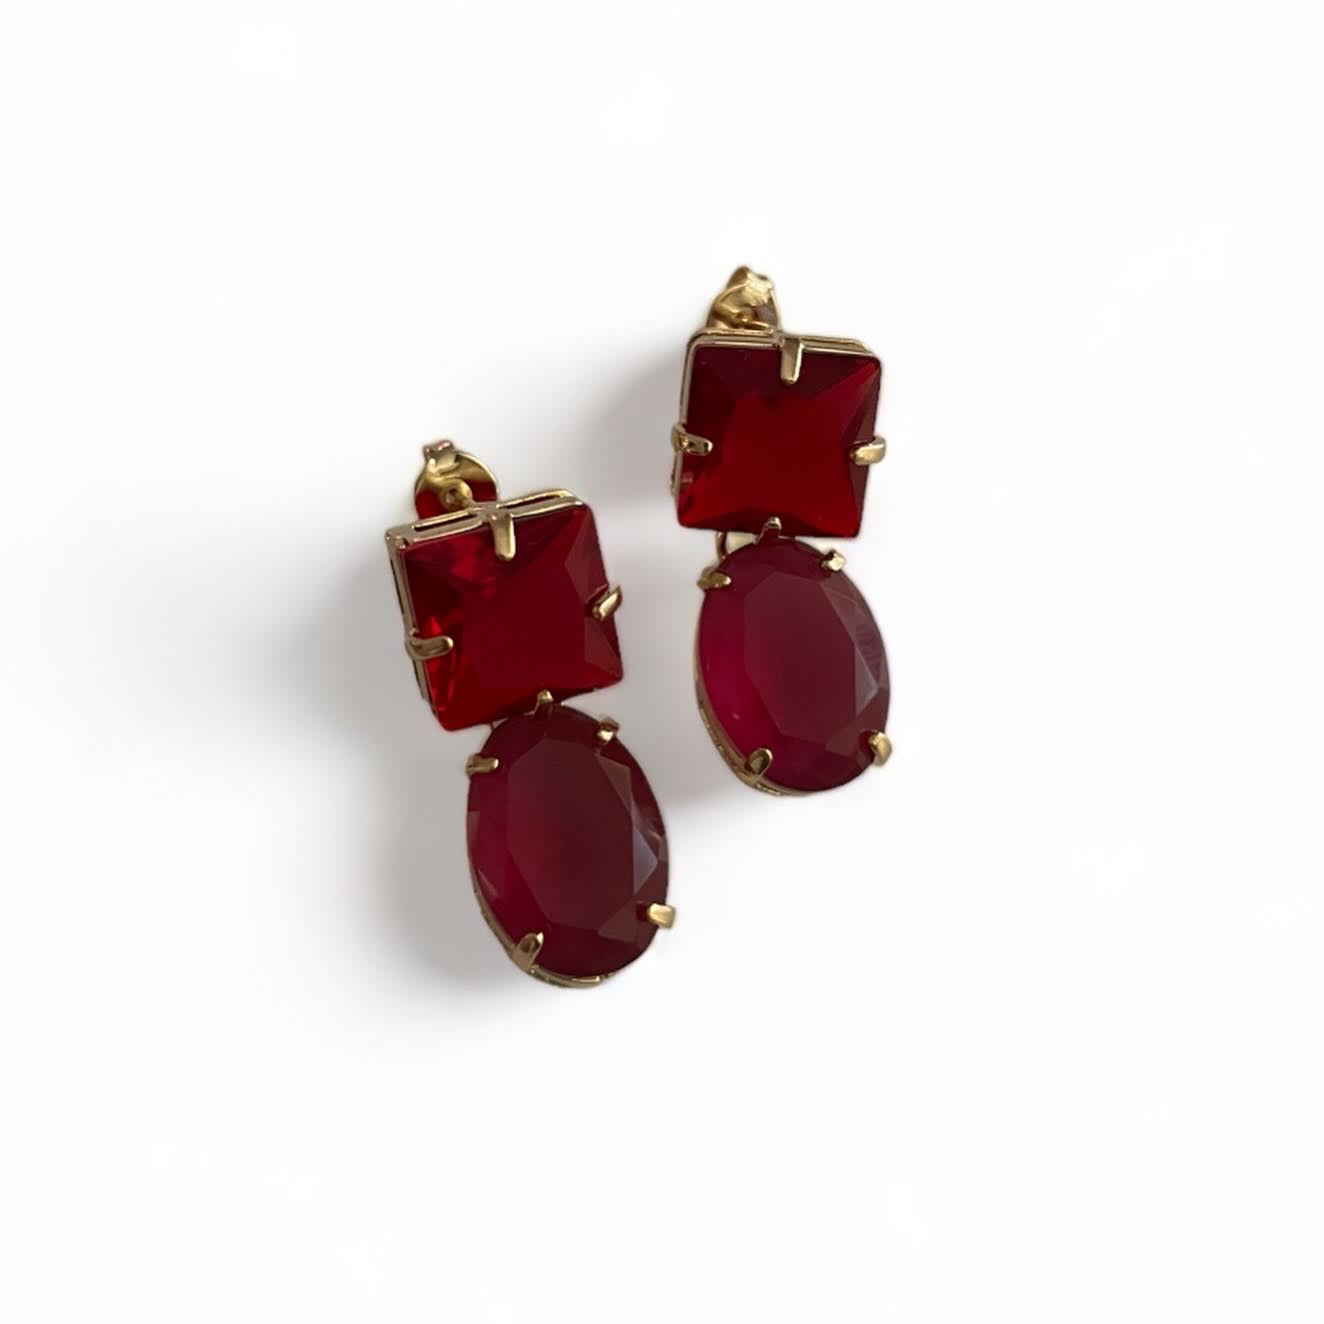 Colored gemstones earrings